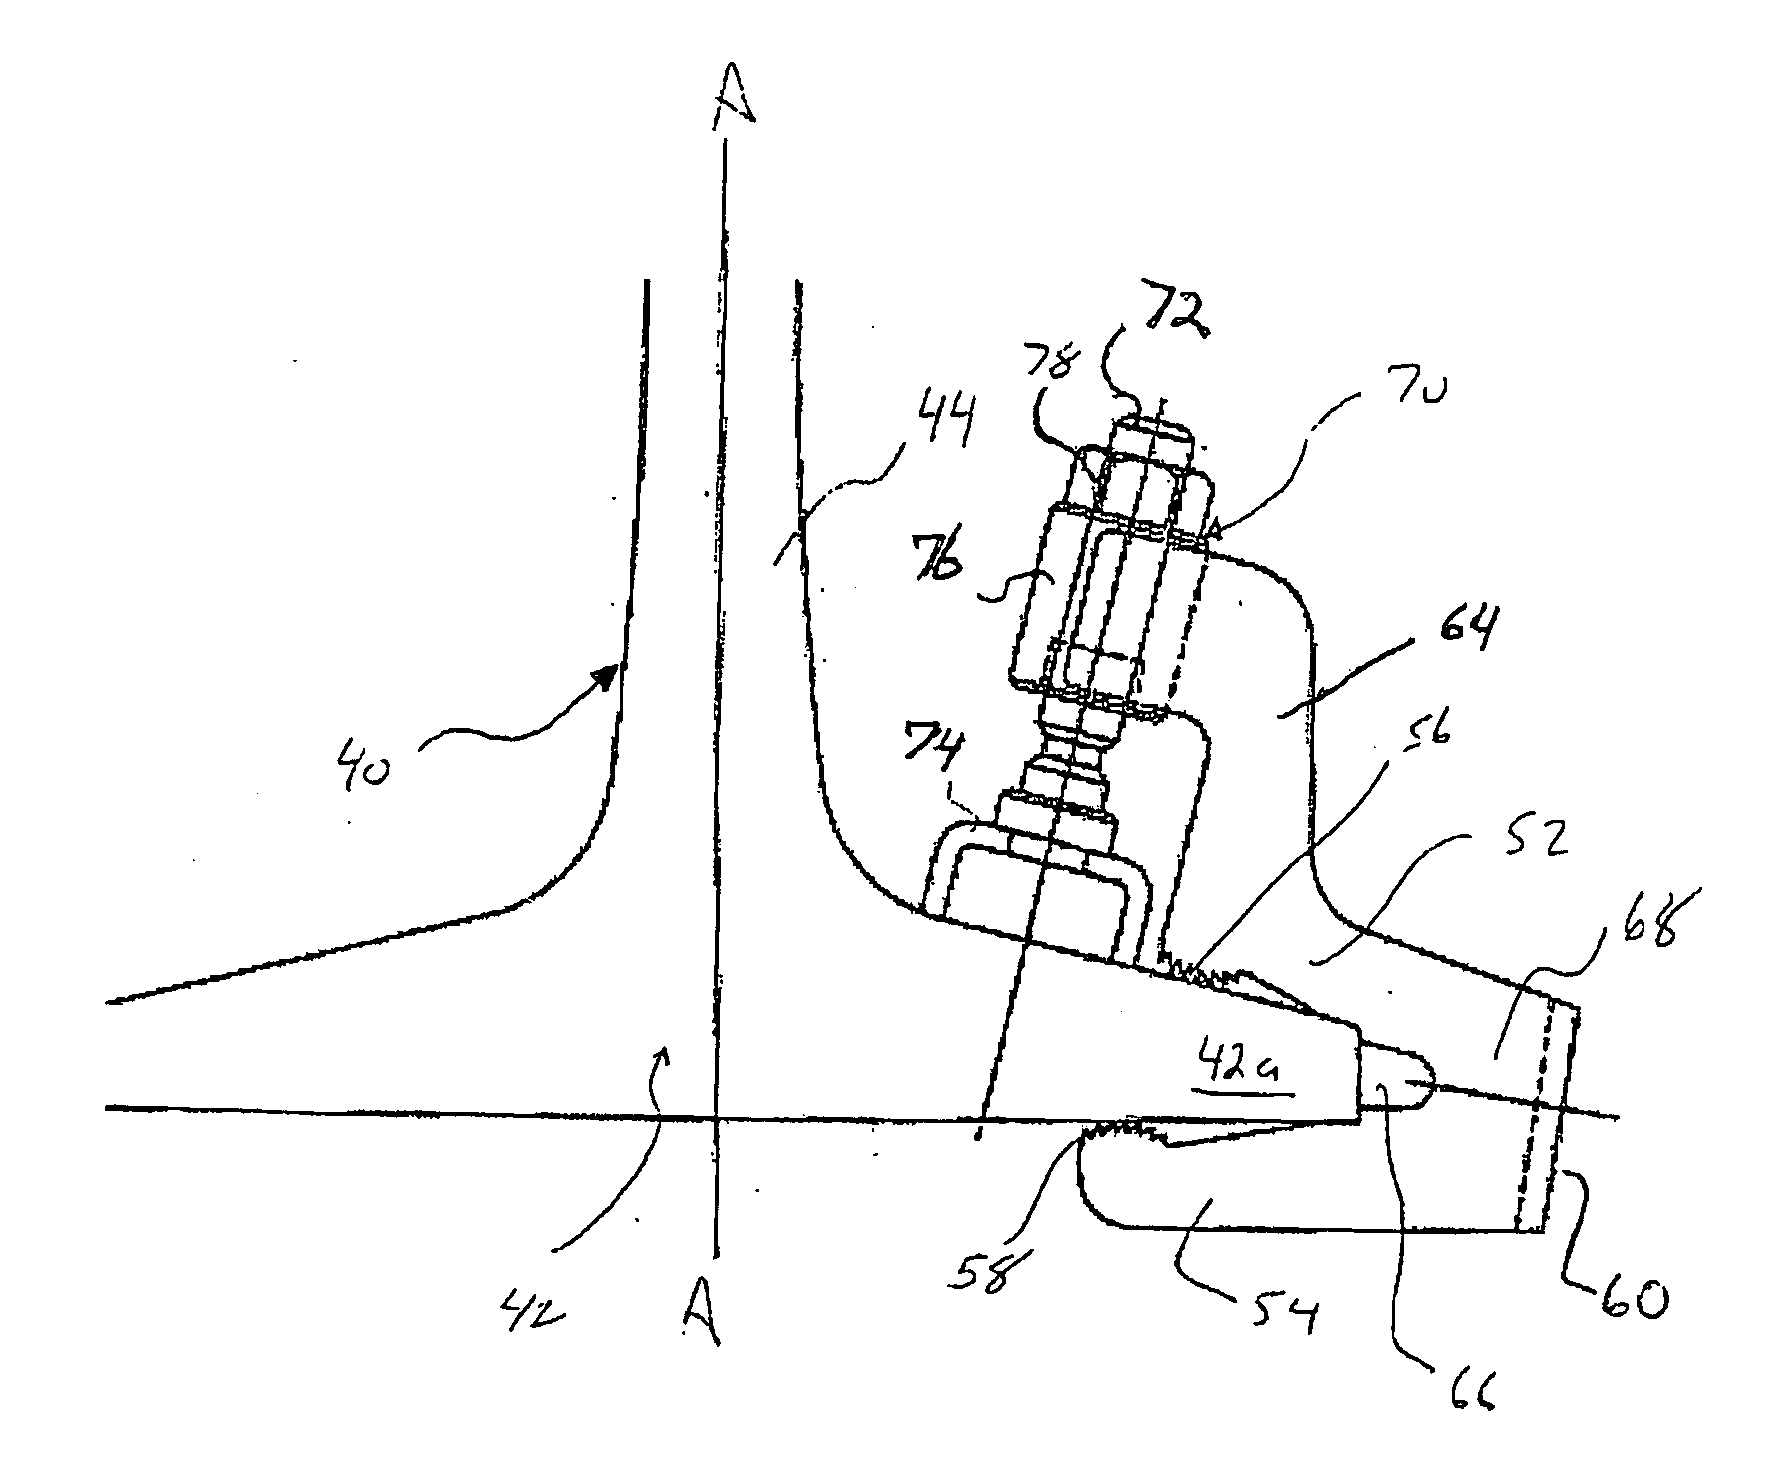 Non-invasive railroad attachment mechanism